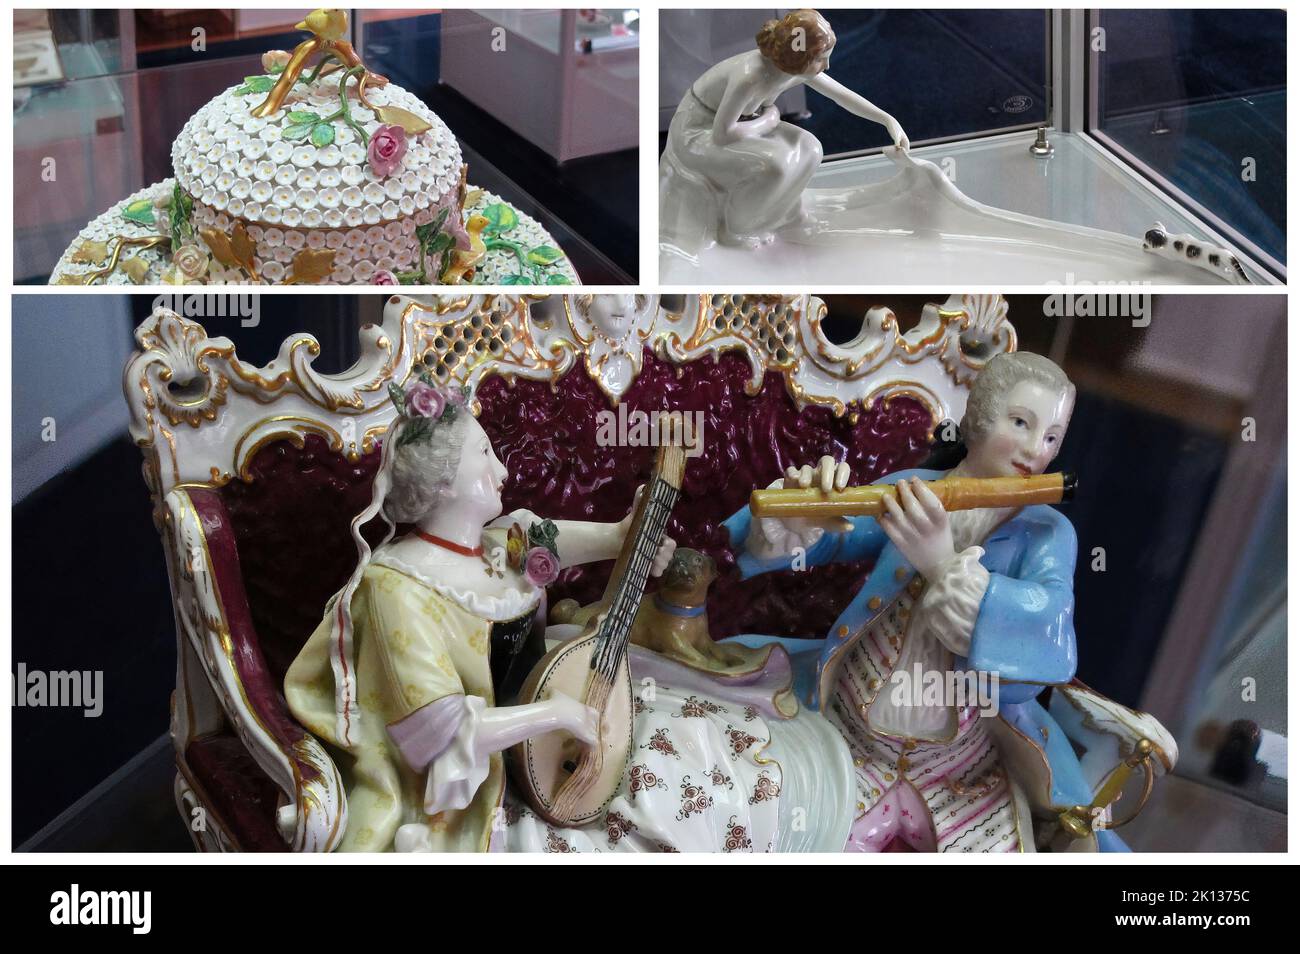 La collection de porcelaine Meissen à l'intérieur du luxueux Palais Catherine, situé dans la ville de Tsarskoye Selo (Pouchkine), Saint-Pétersbourg, Russie Banque D'Images